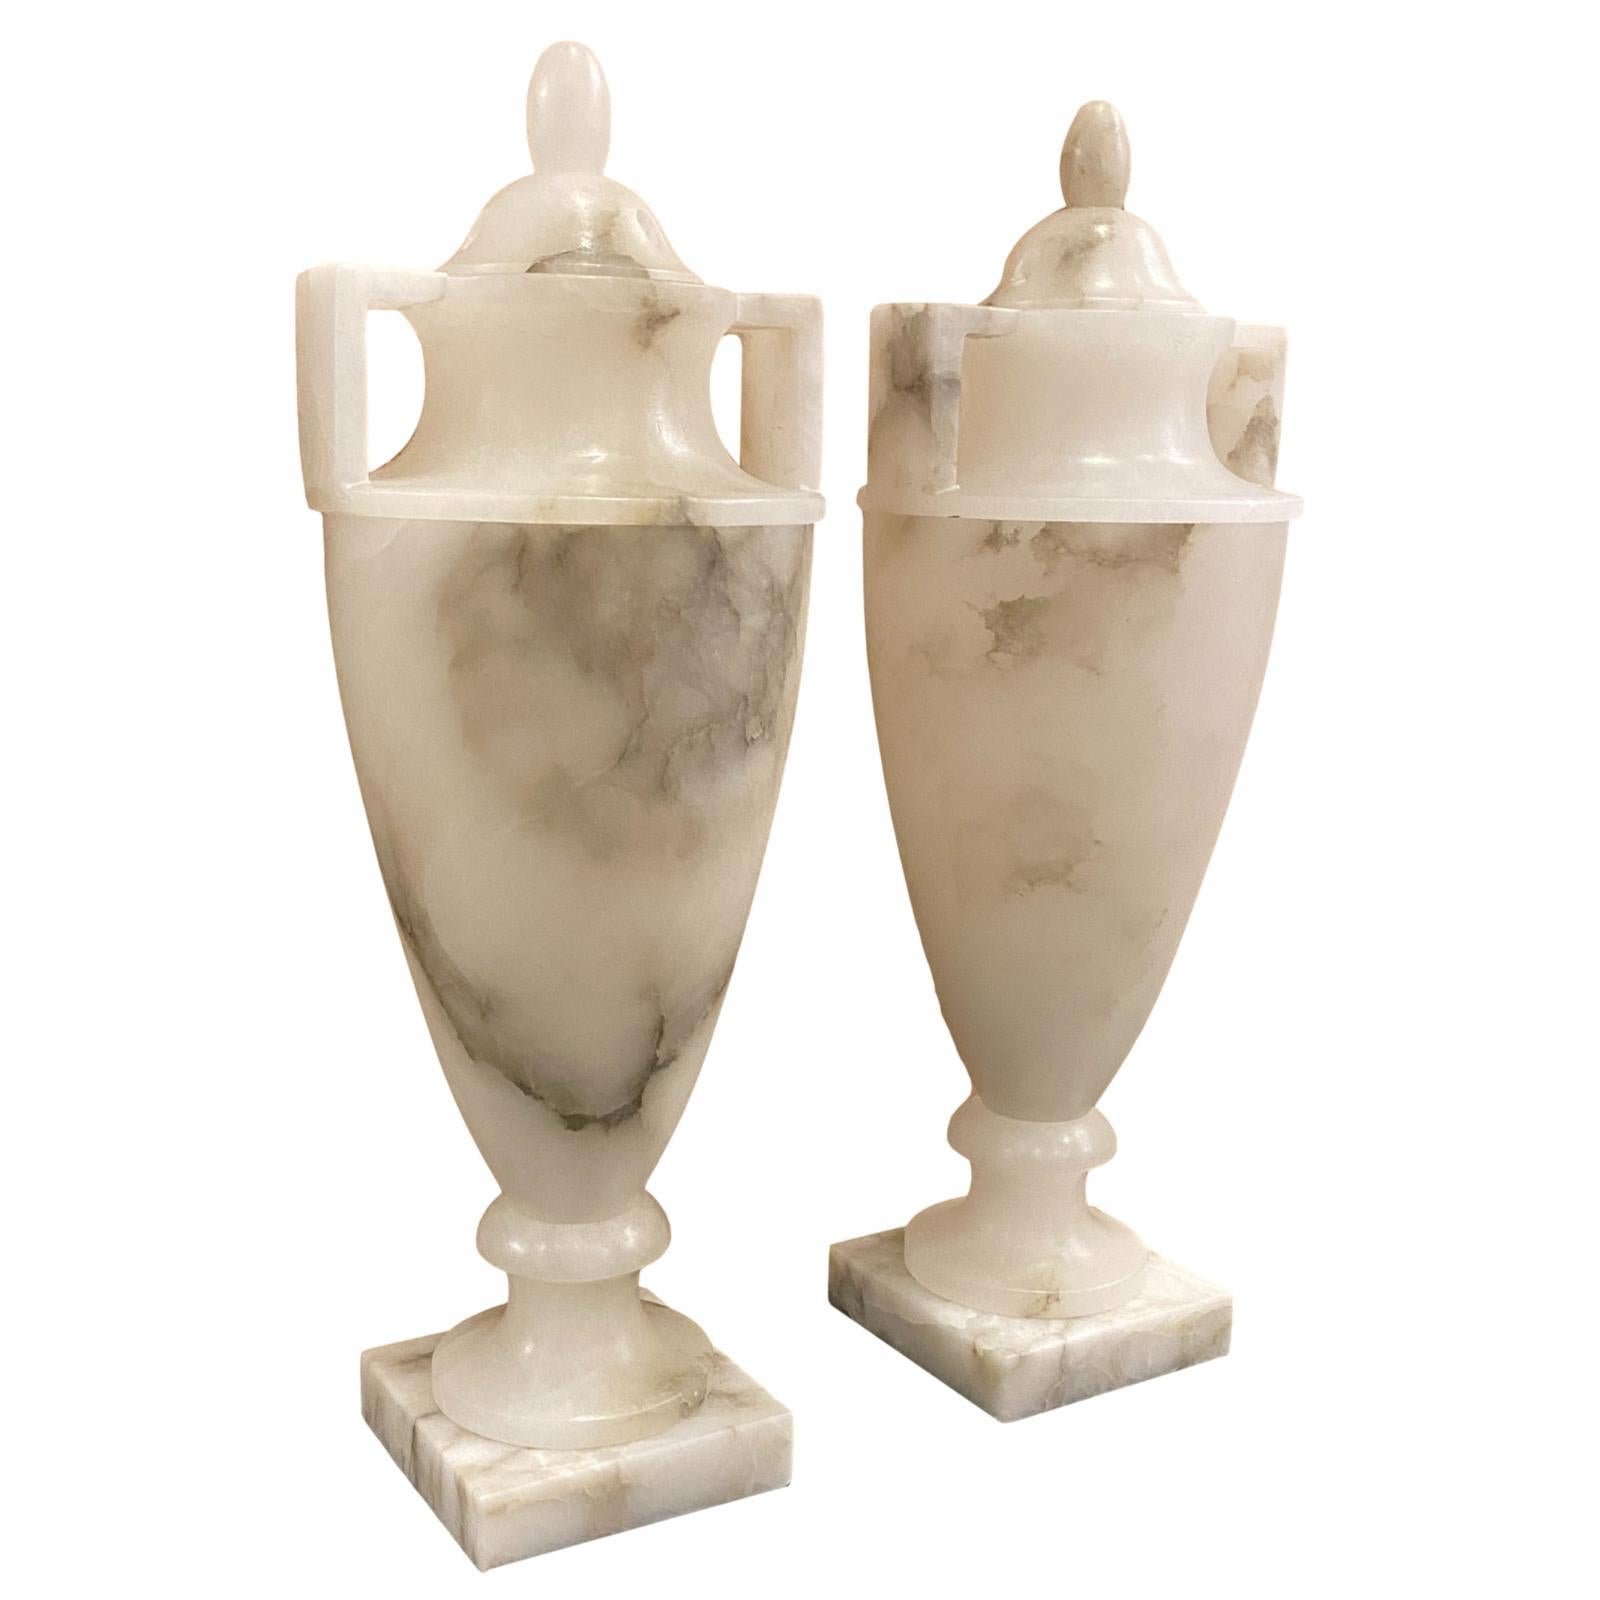 Zwei italienische geschnitzte Alabaster-Tischlampen mit Deckel und Innenbeleuchtung aus der Zeit um 1950.

Abmessungen:
Höhe: 17,5